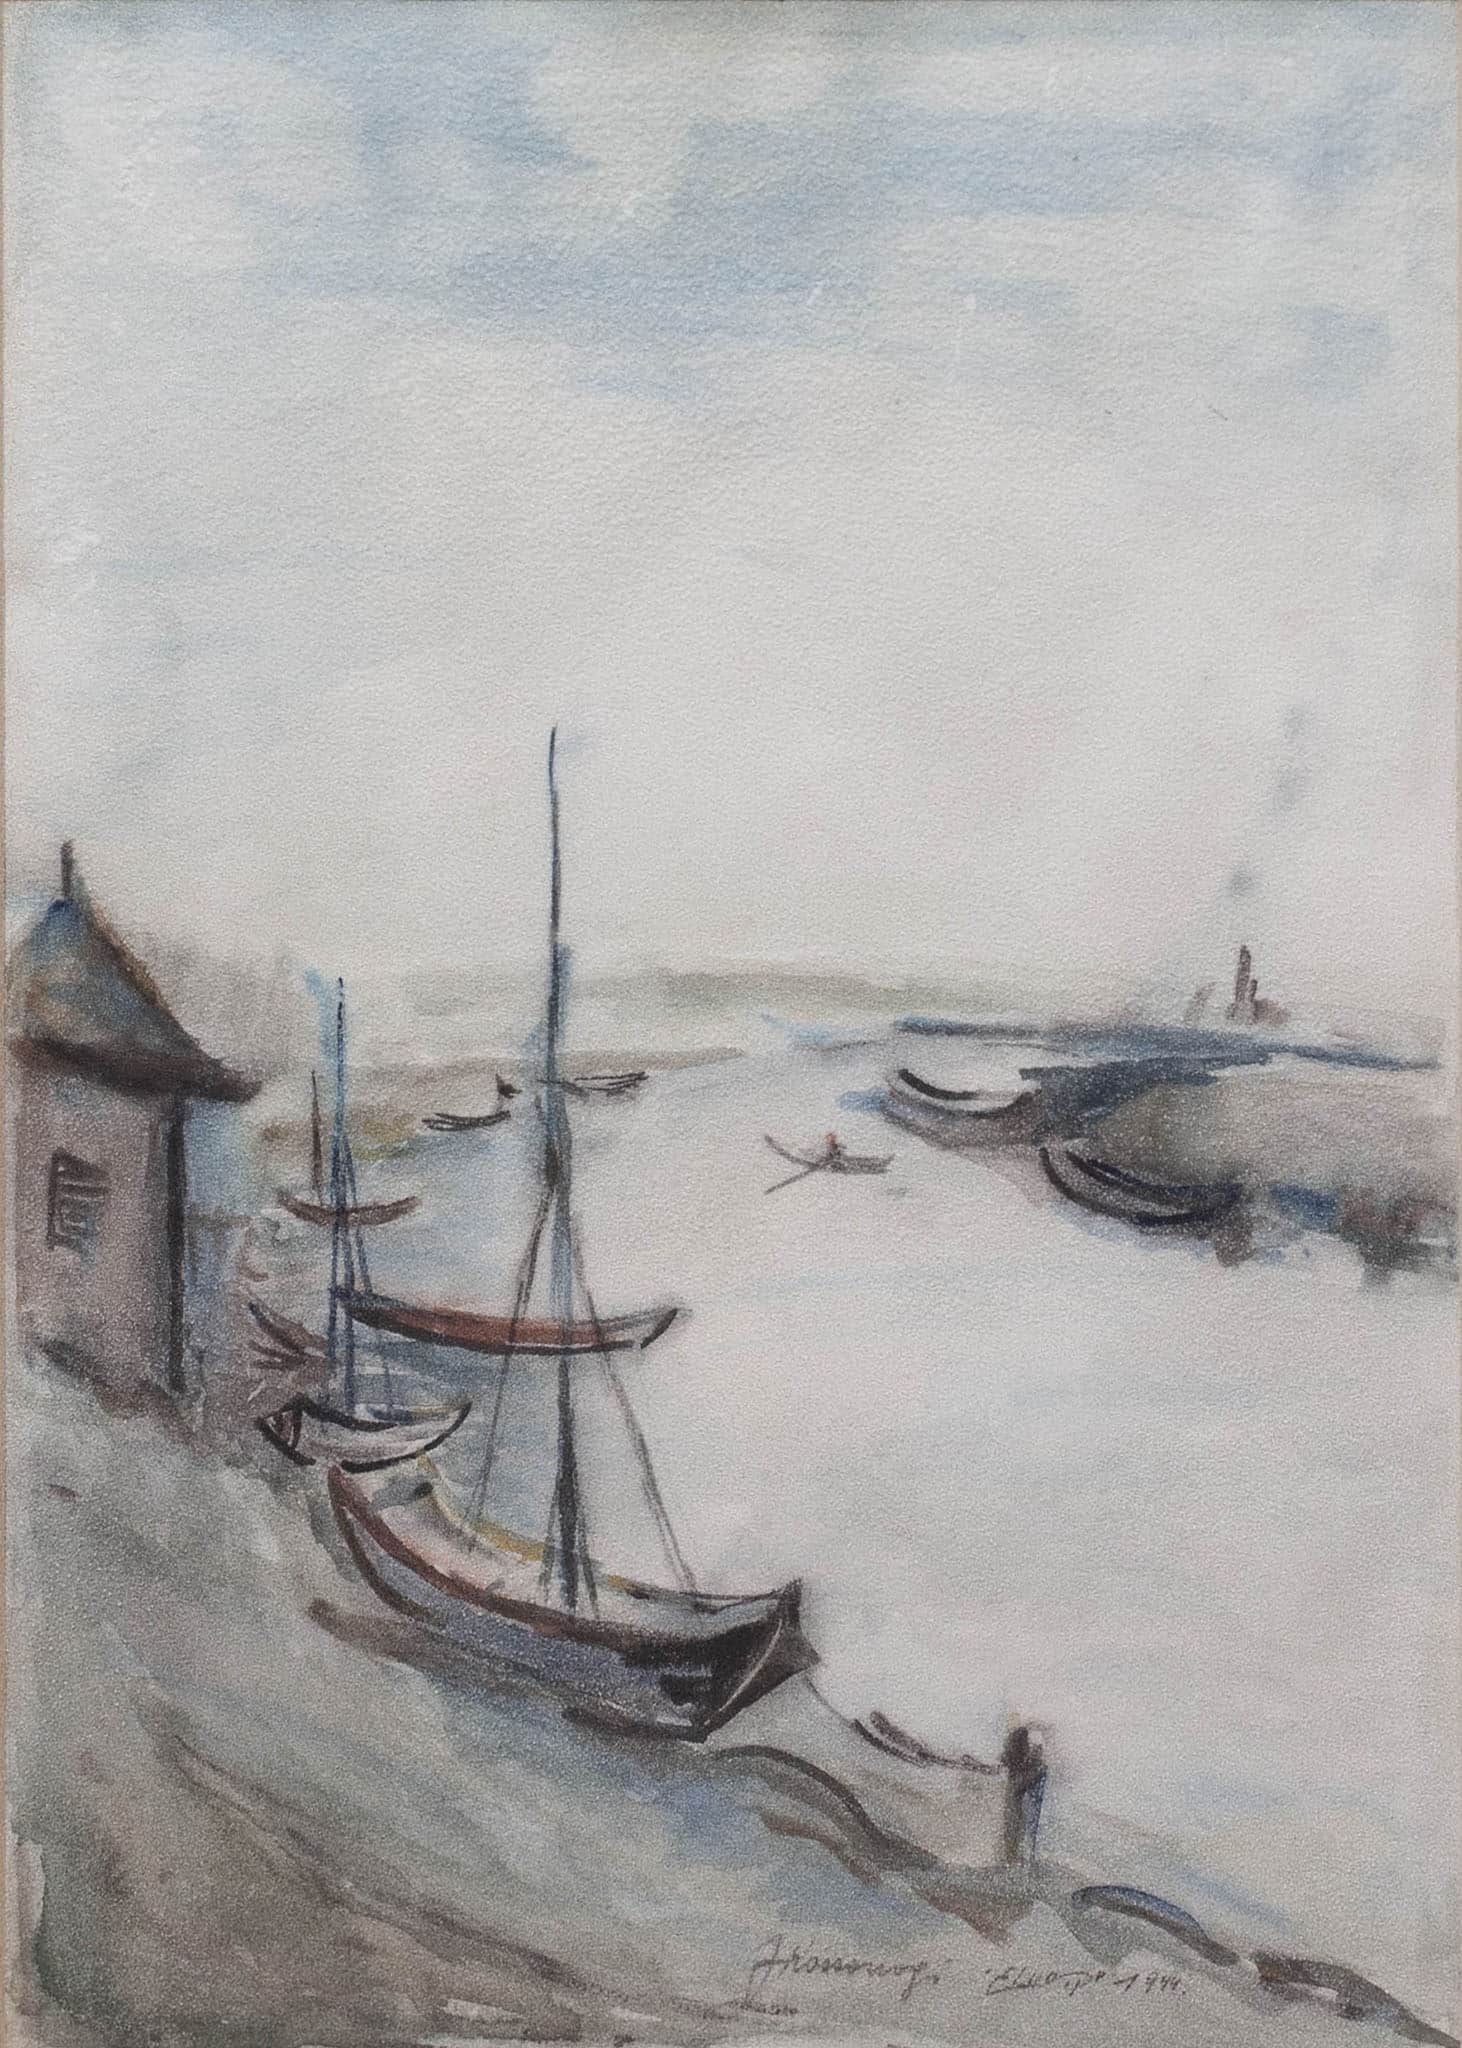 יוסף קוסונוגי, "סירות בנהר", 1944, צבעי מים על נייר, 25x35 ס"מ